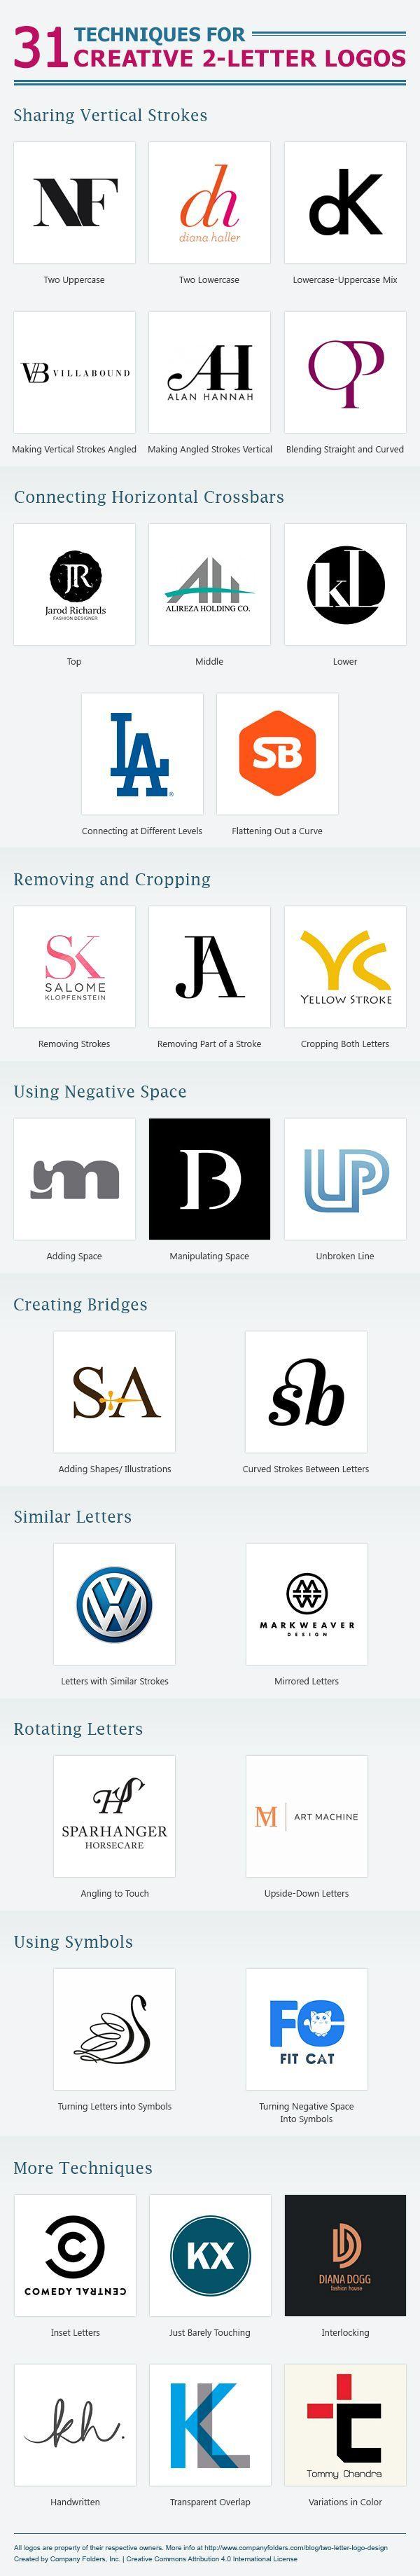 Um Logo - 31 Técnicas para criar um logo com apenas duas letras | Designing ...